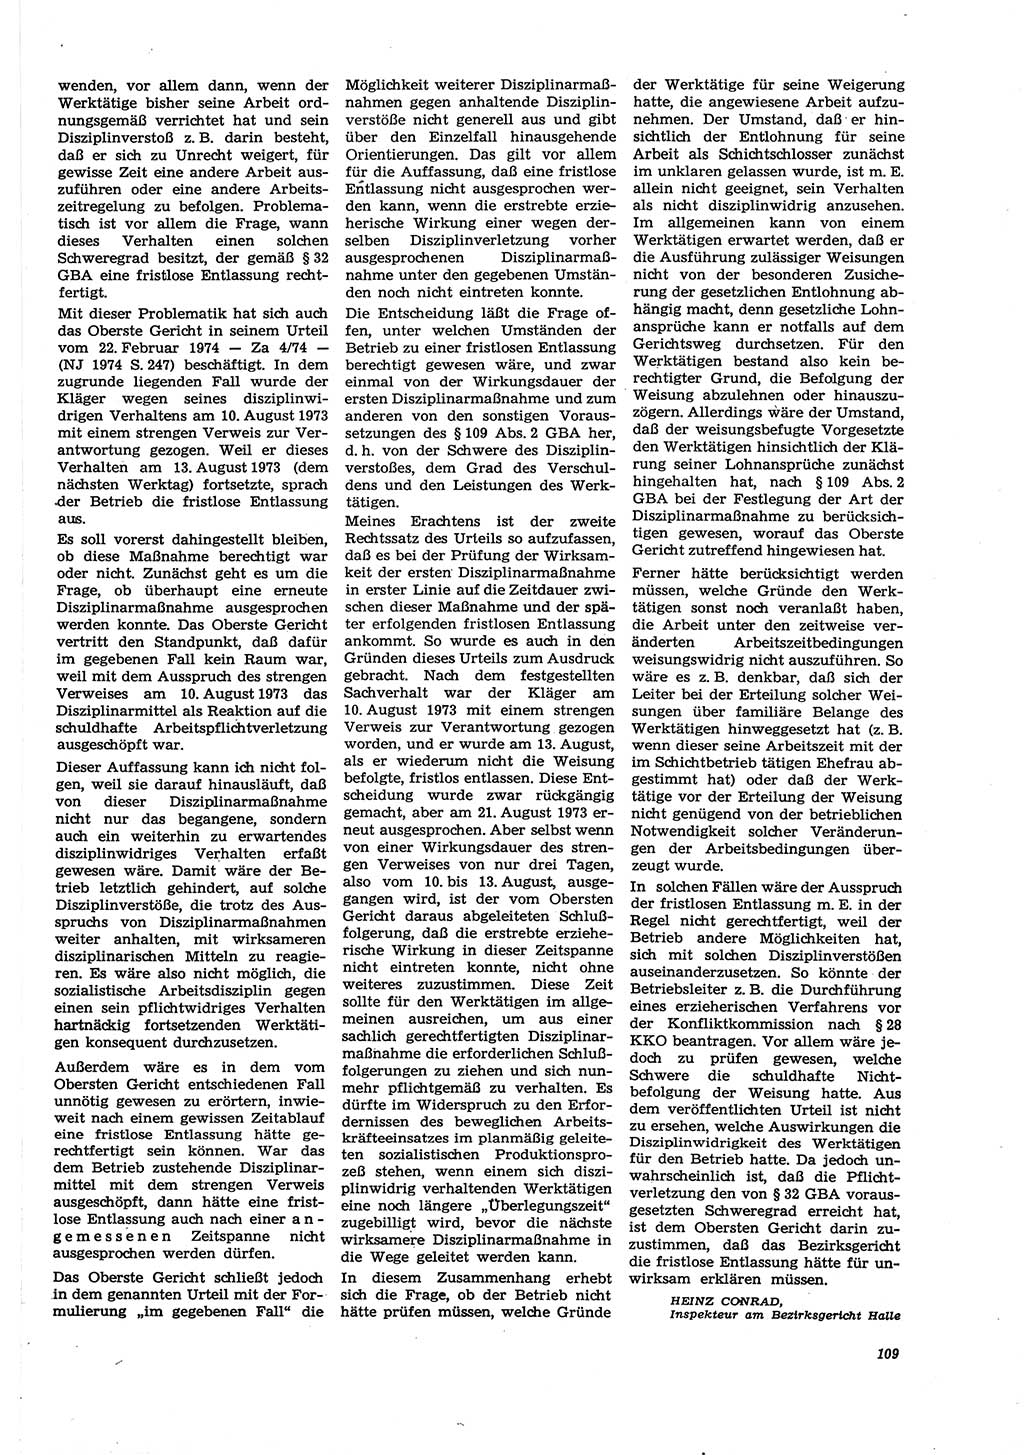 Neue Justiz (NJ), Zeitschrift für Recht und Rechtswissenschaft [Deutsche Demokratische Republik (DDR)], 30. Jahrgang 1976, Seite 109 (NJ DDR 1976, S. 109)